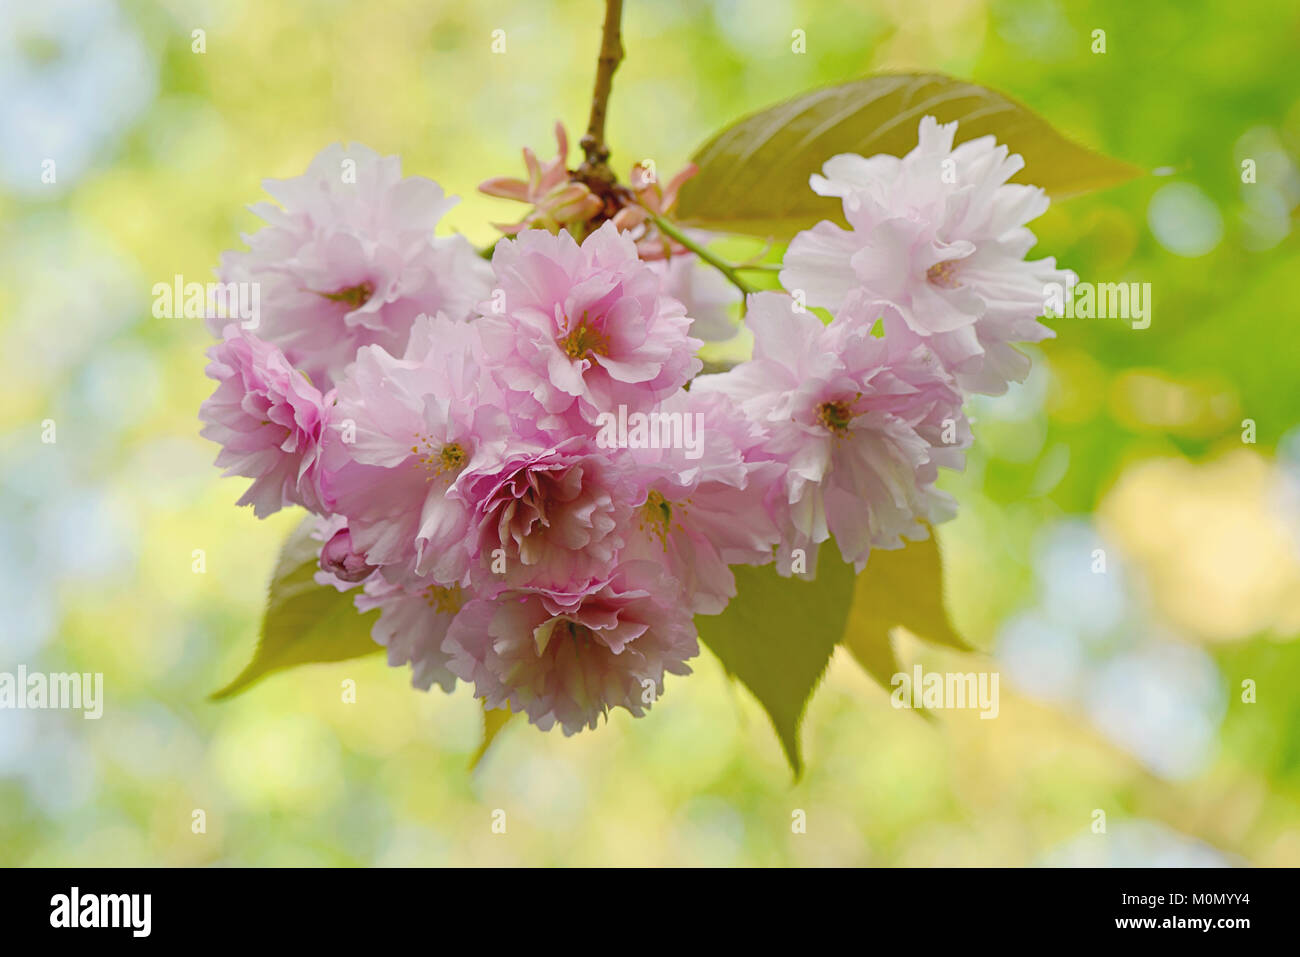 Image de la superbe floraison de printemps 'Prunus Kanzan' fleurs fleur de cerisier rose Banque D'Images